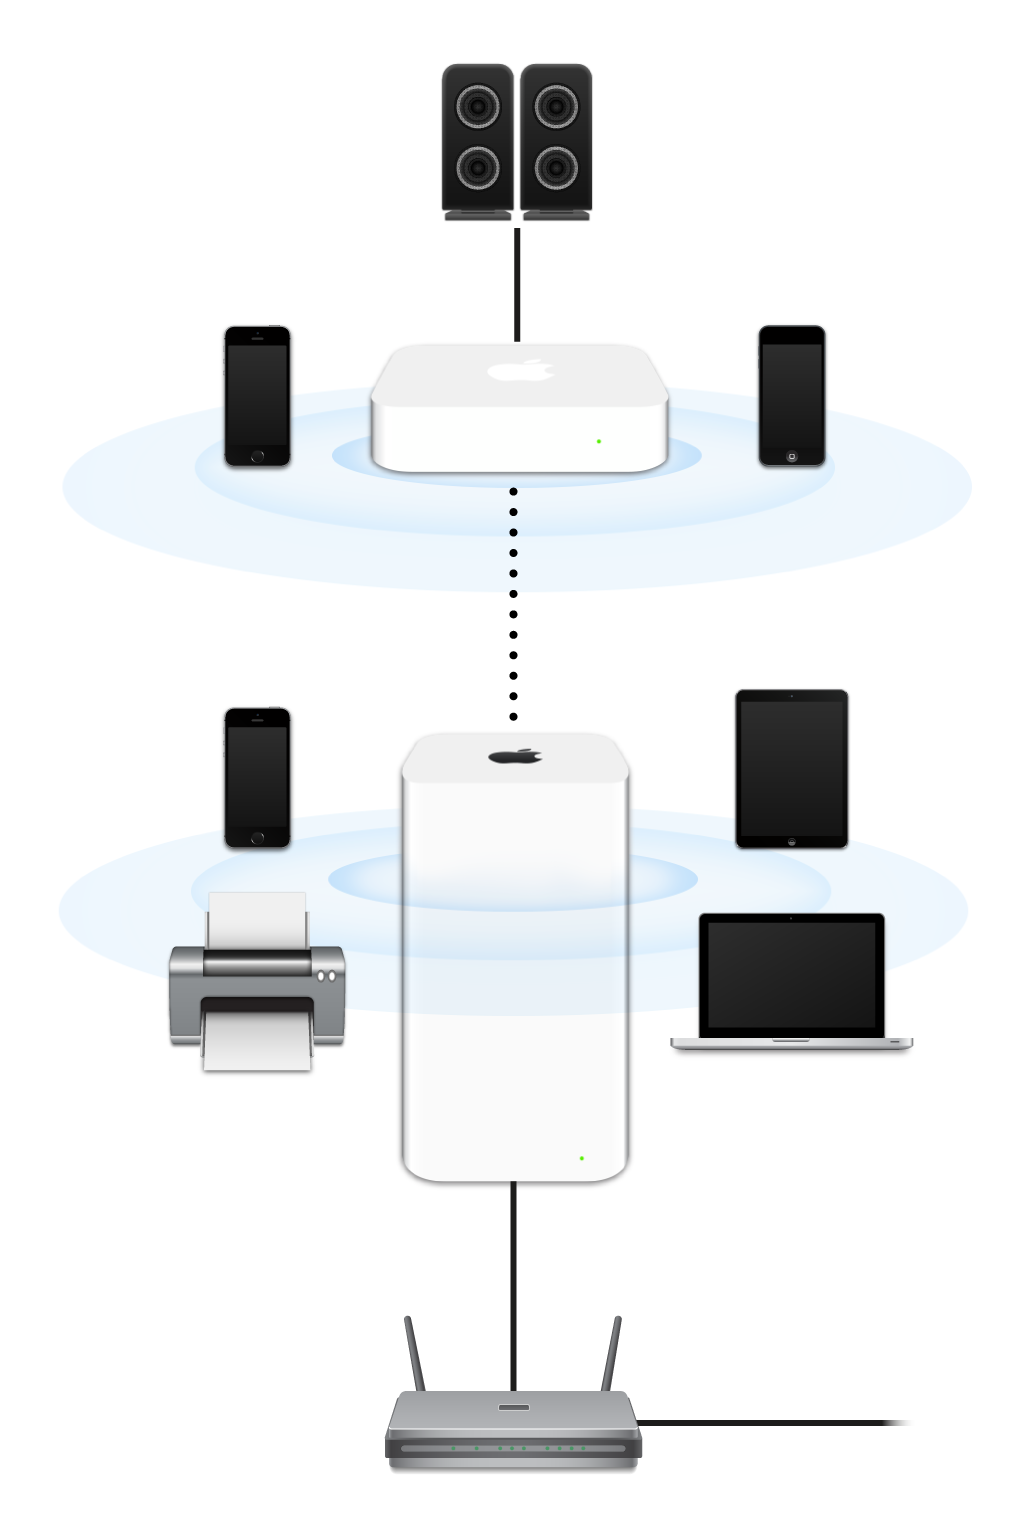 เครือข่ายแบบขยาย ซึ่งรวมถึง AirPort Extreme และ AirPort Express ได้เชื่อมต่อกับโมเด็มและส่งสัญญาณไปยังอุปกรณ์หลากหลายตัว